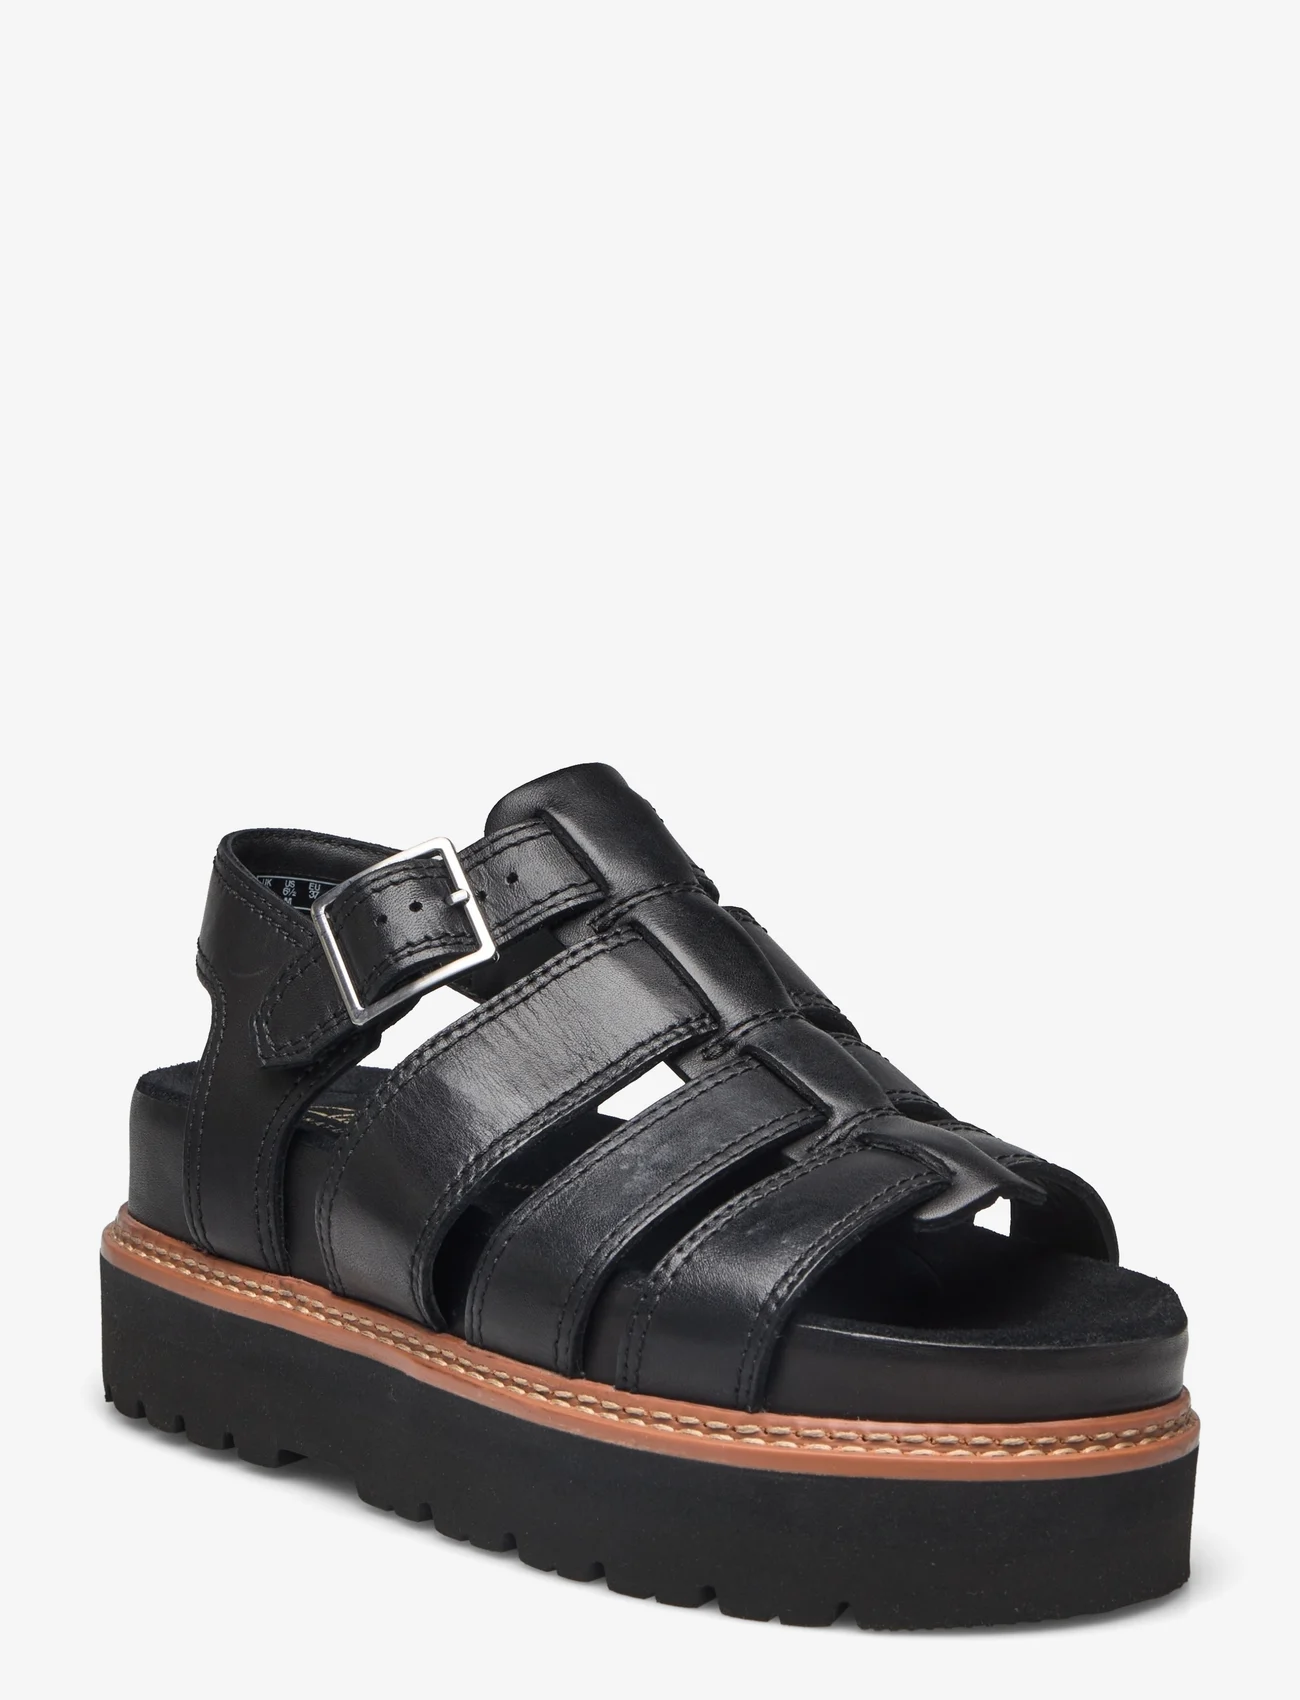 Clarks - Orianna Twist D - platform sandals - 1216 black leather - 0